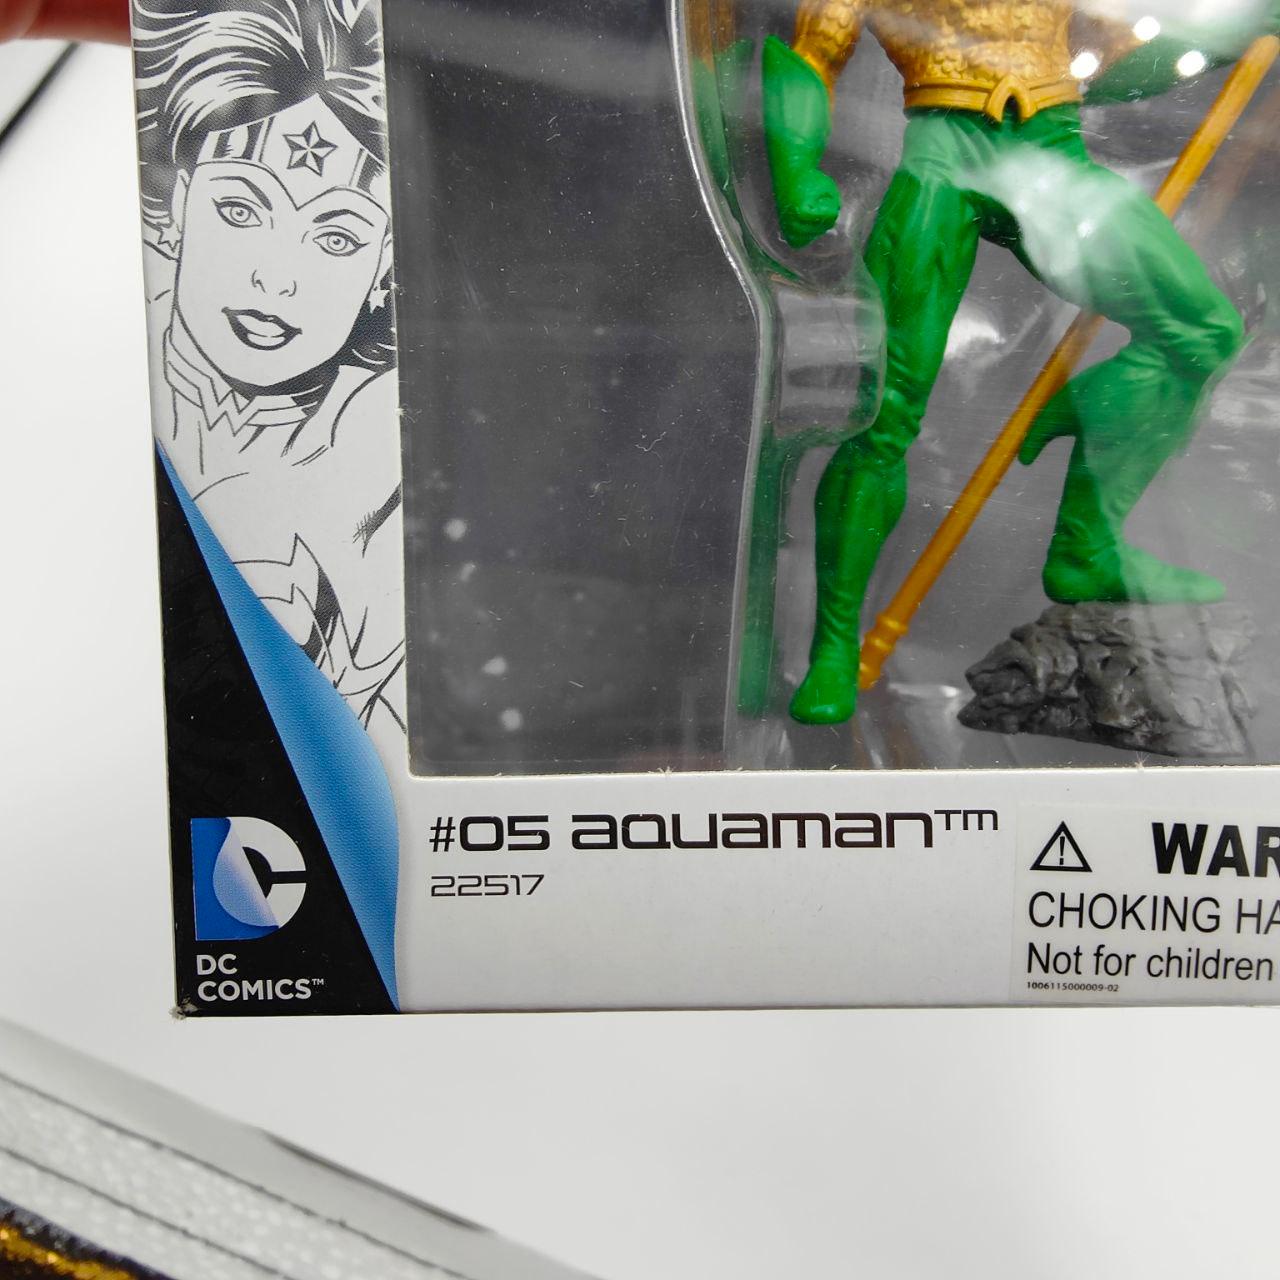 Schleich 22517 - Justice League Aquaman, Hand-Painted Figure Comics Toy - Massive Discounts